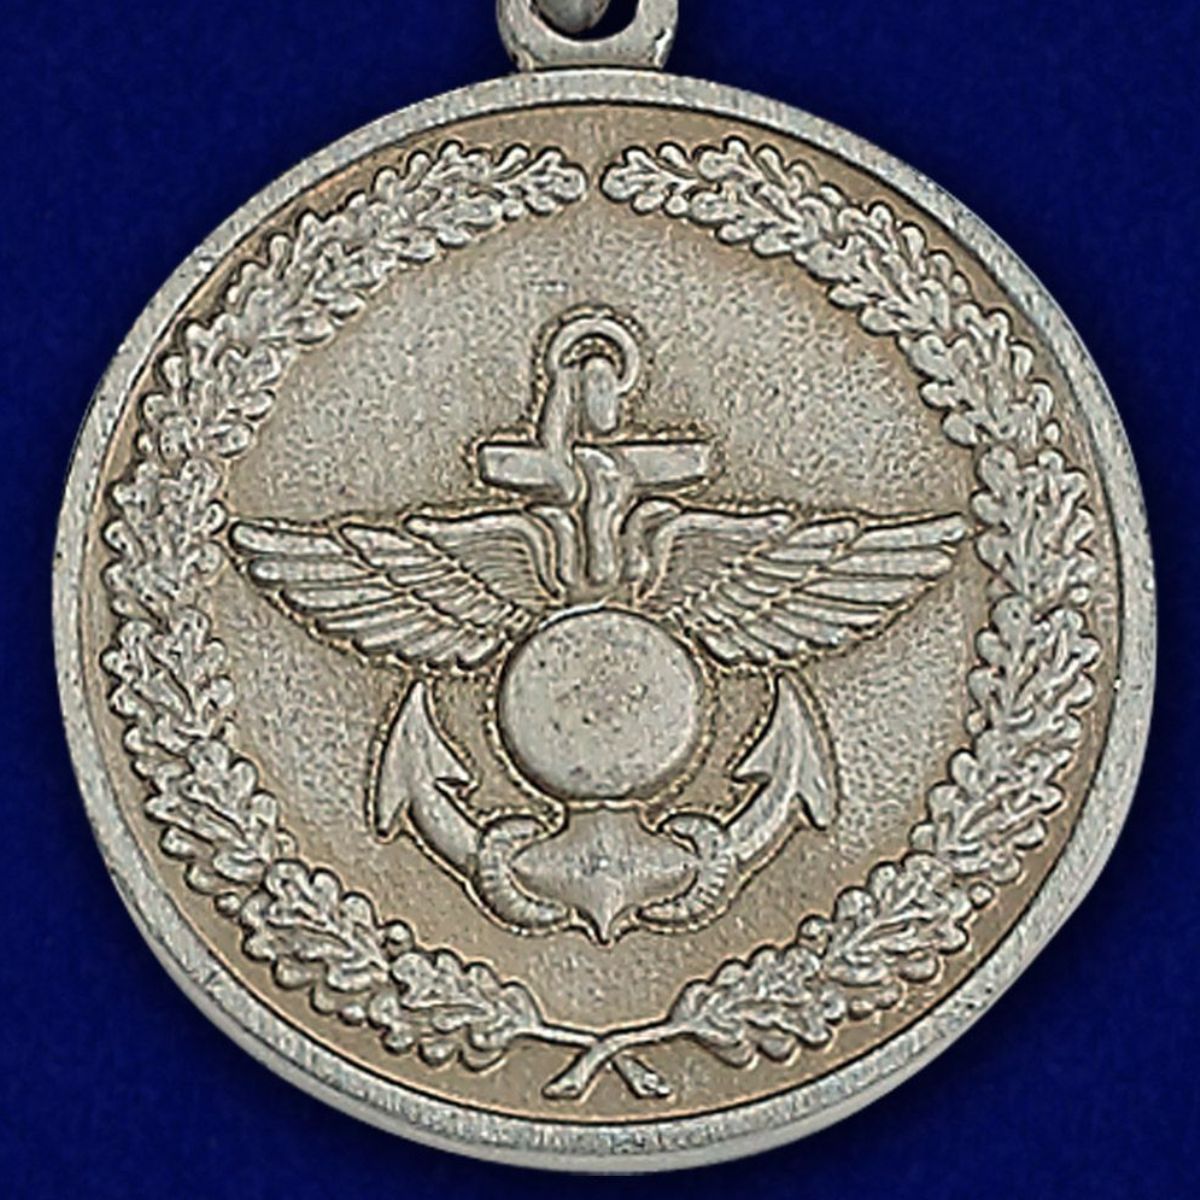 Медаль МО РФ "За отличие в учениях" в наградном футляре 